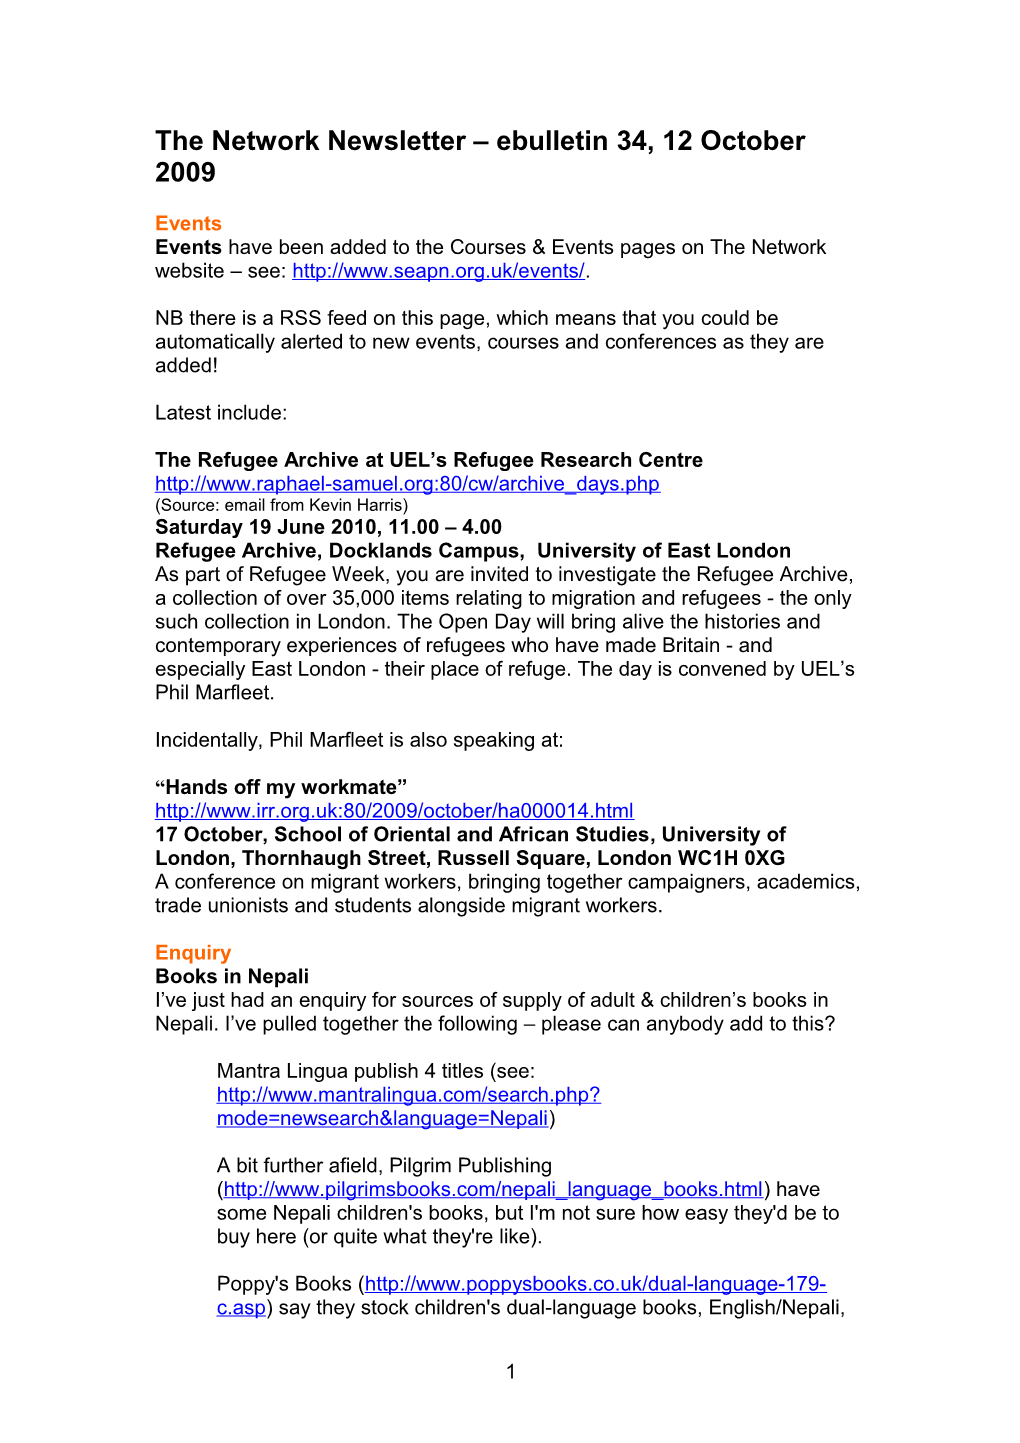 The Network Newsletter Ebulletin 1, 14 April 2008 s5